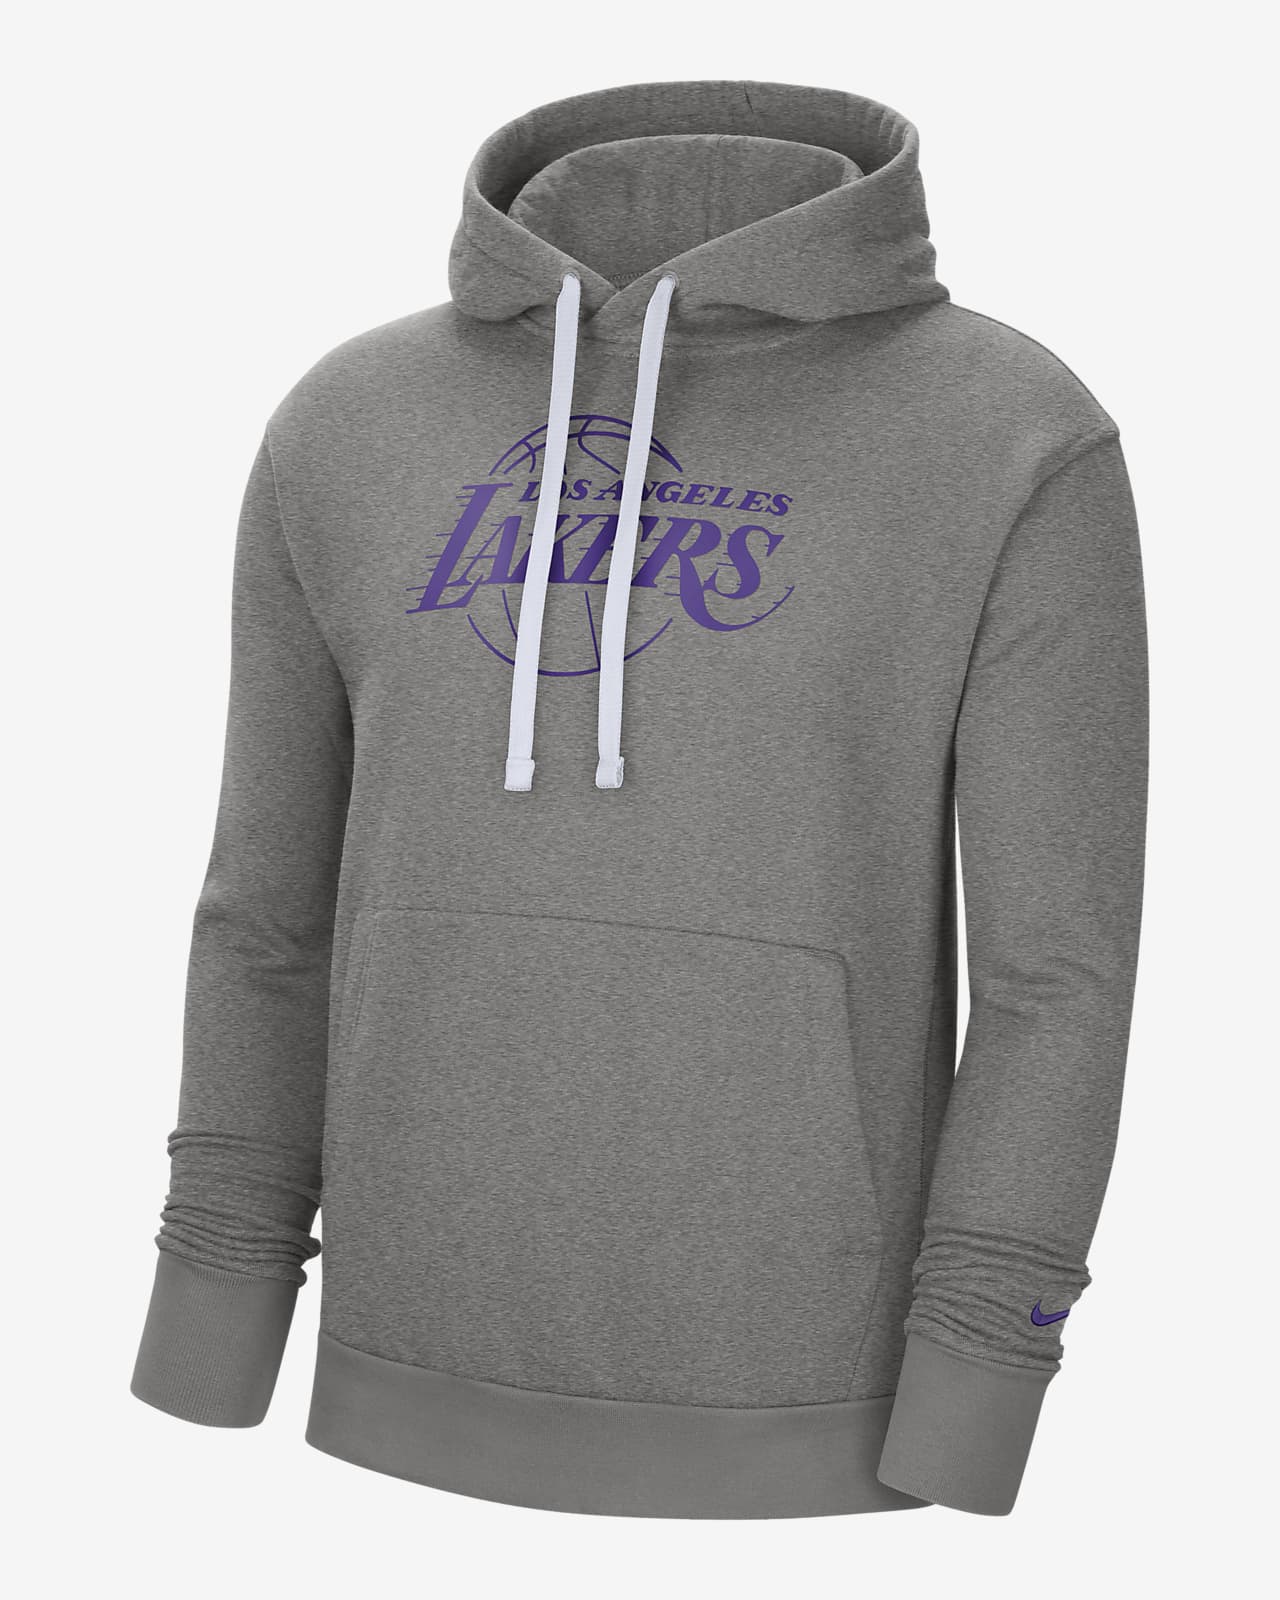 purple lakers nike hoodie